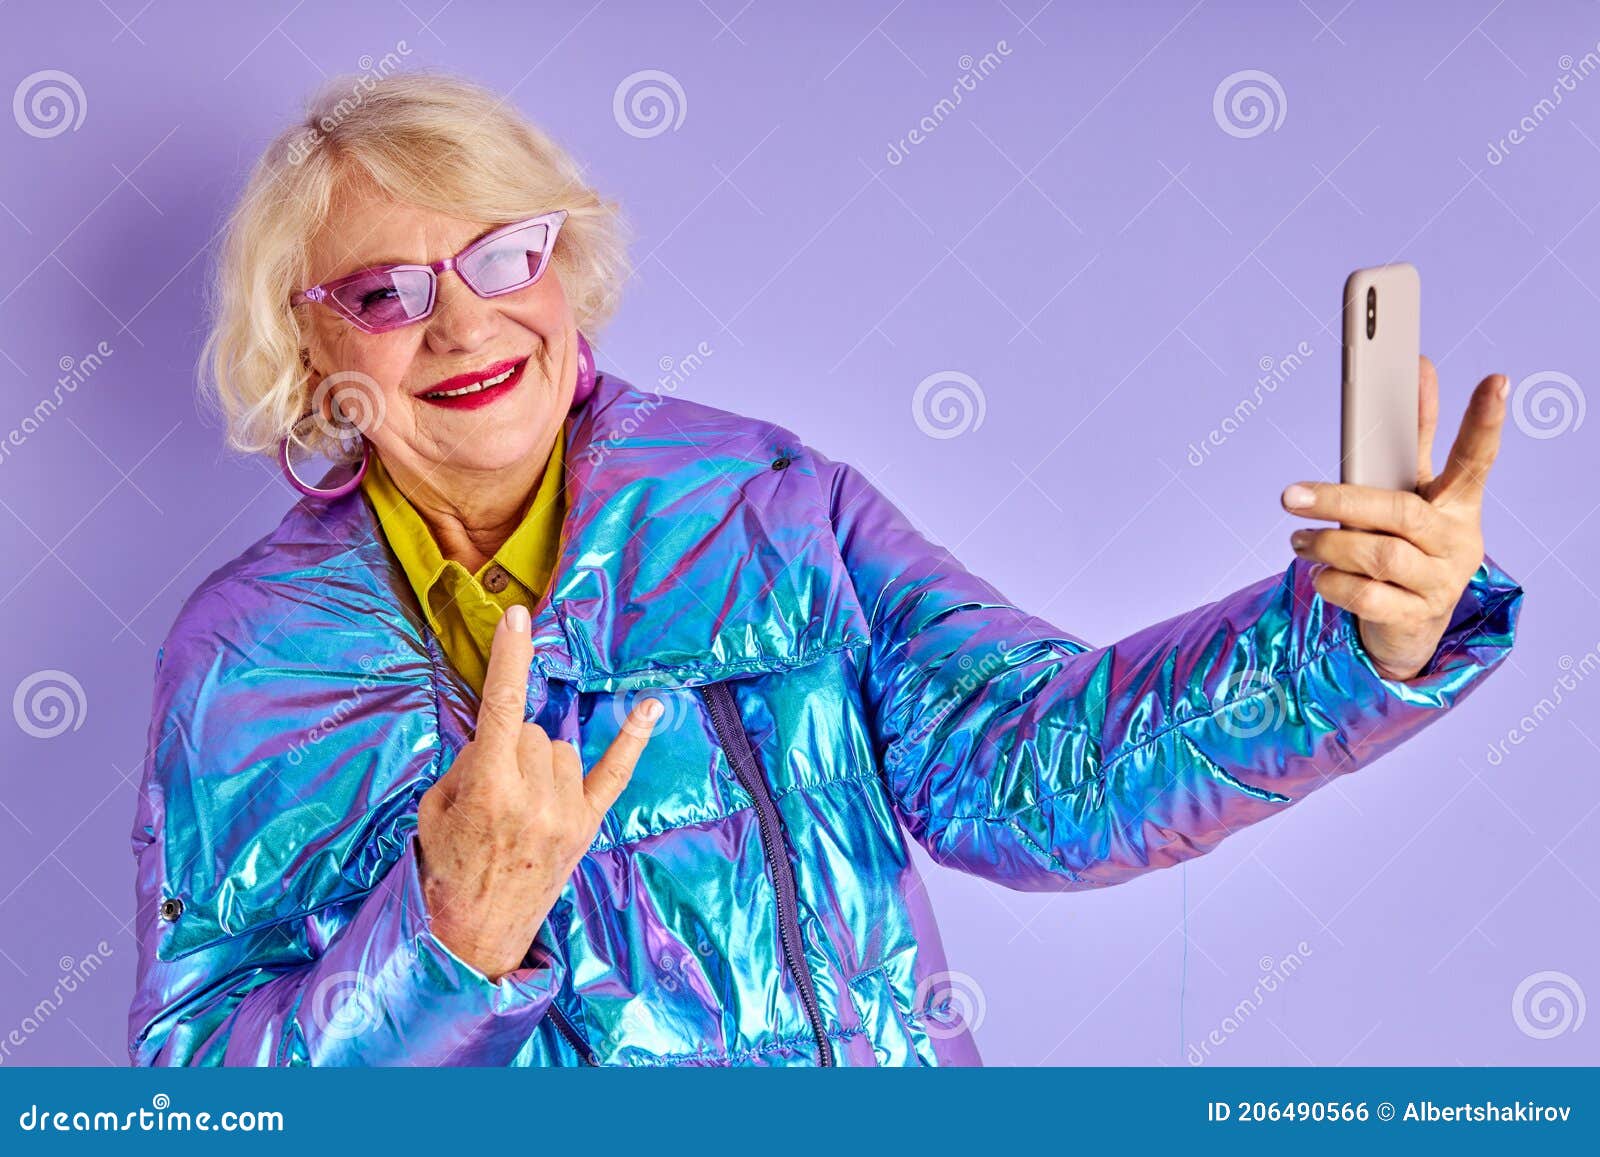 Gekke Volwassen Vrouw Die Foto'S Maakt Selfie Stock Foto - Image Of  Volwassen, Vreedzaam: 206490566